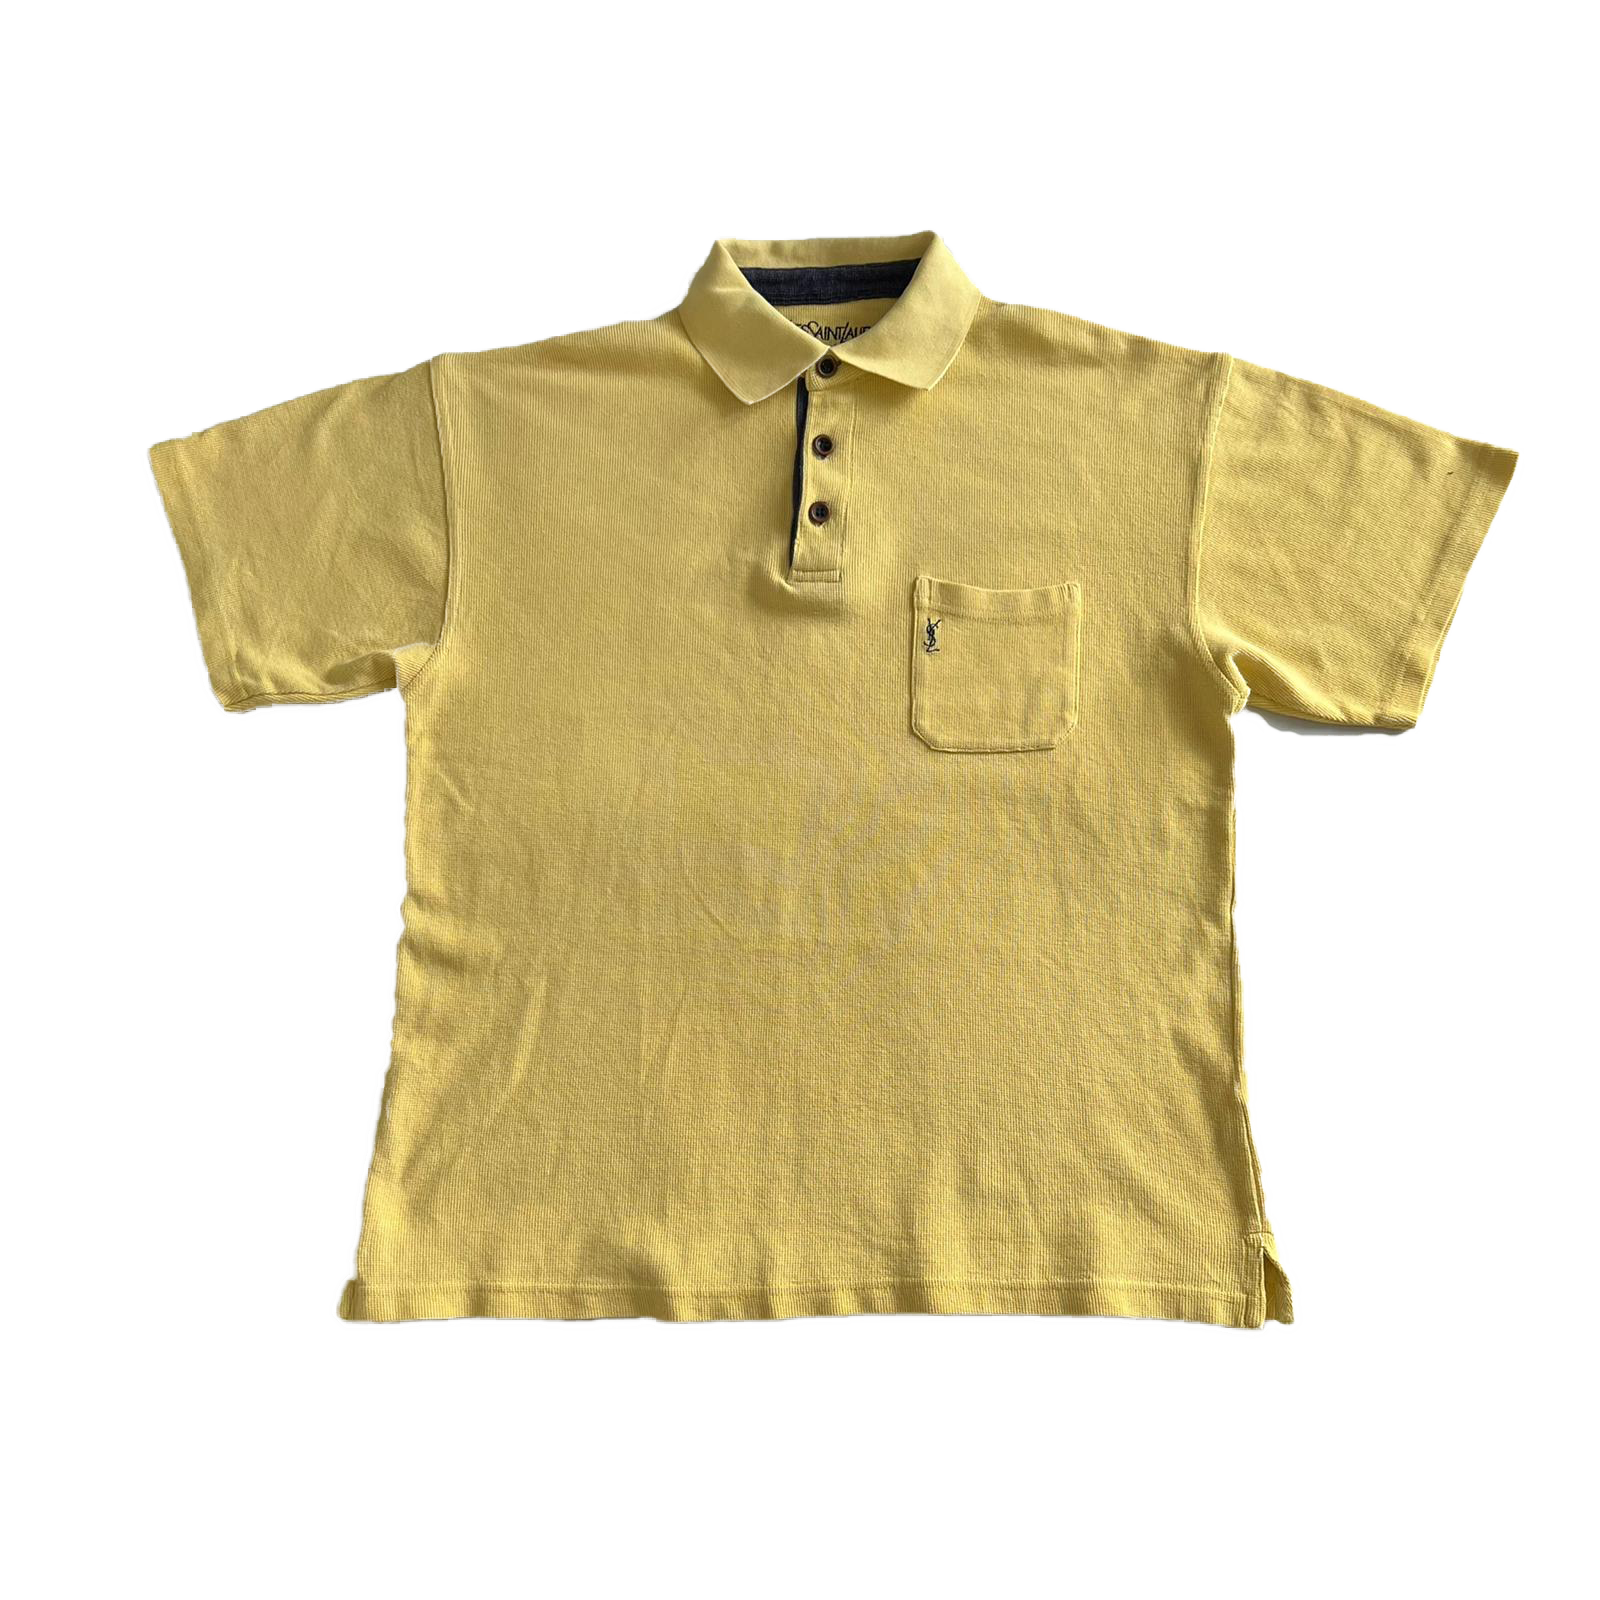 90's YSL polo shirt